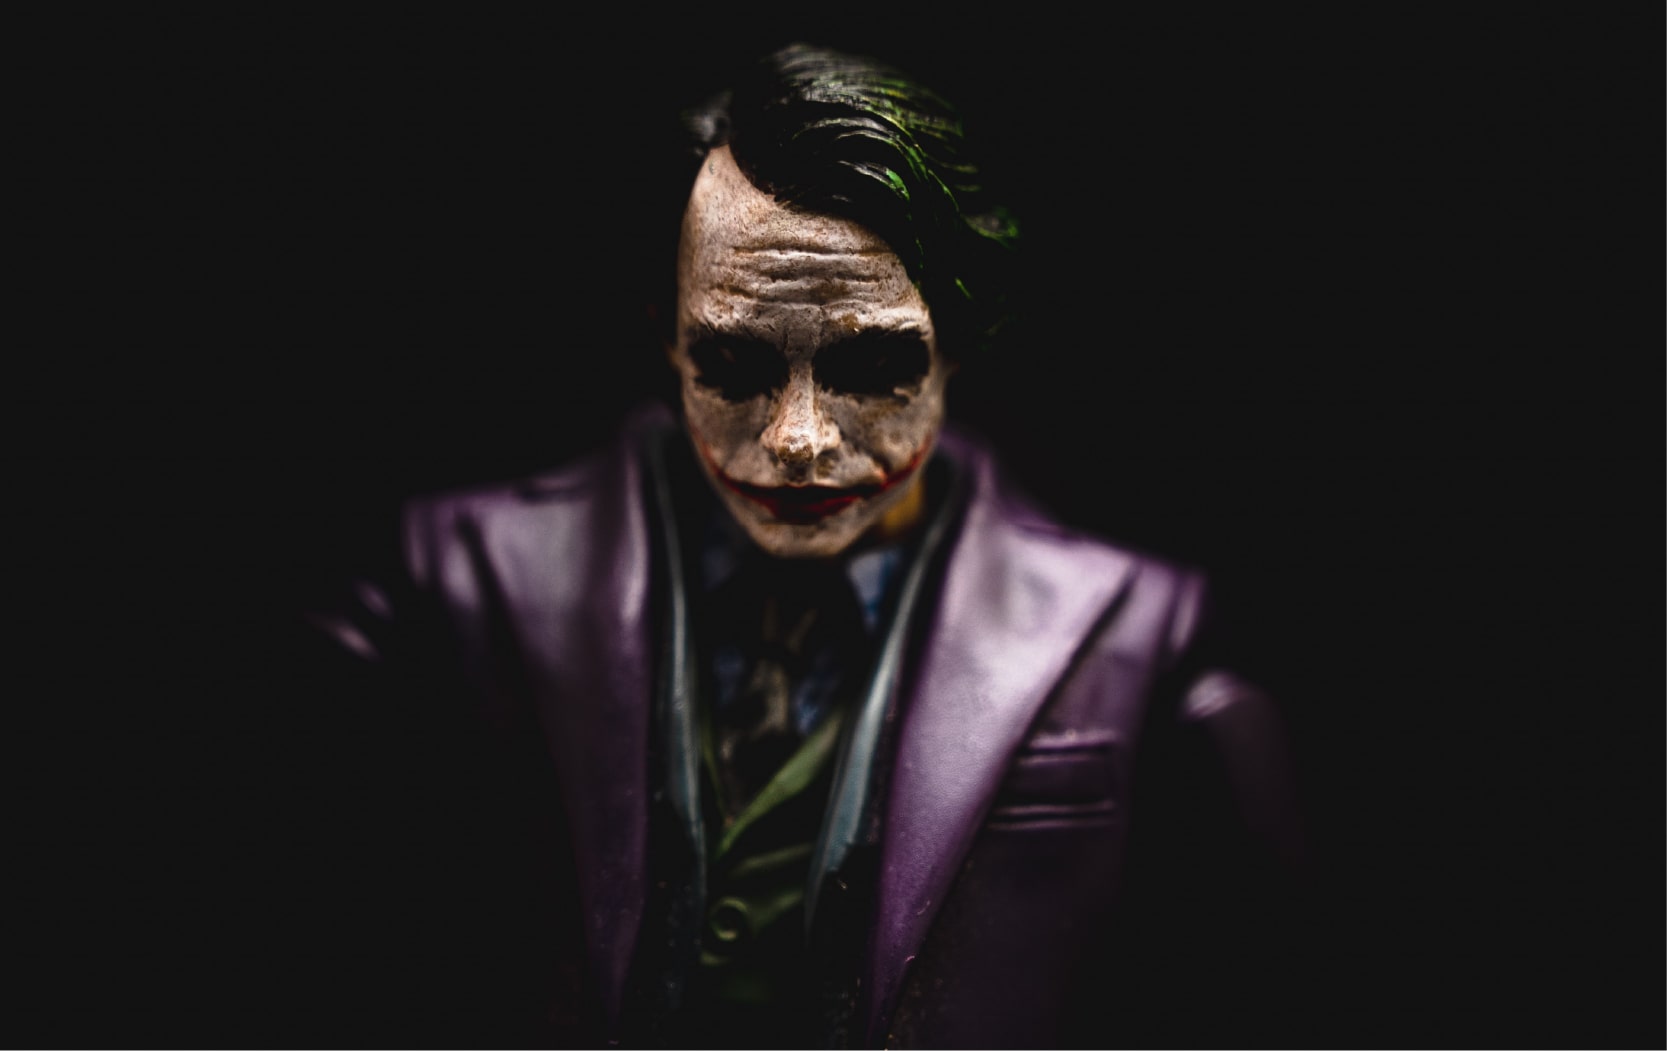 Papel de parede e Wallpaper do Joker em 4K